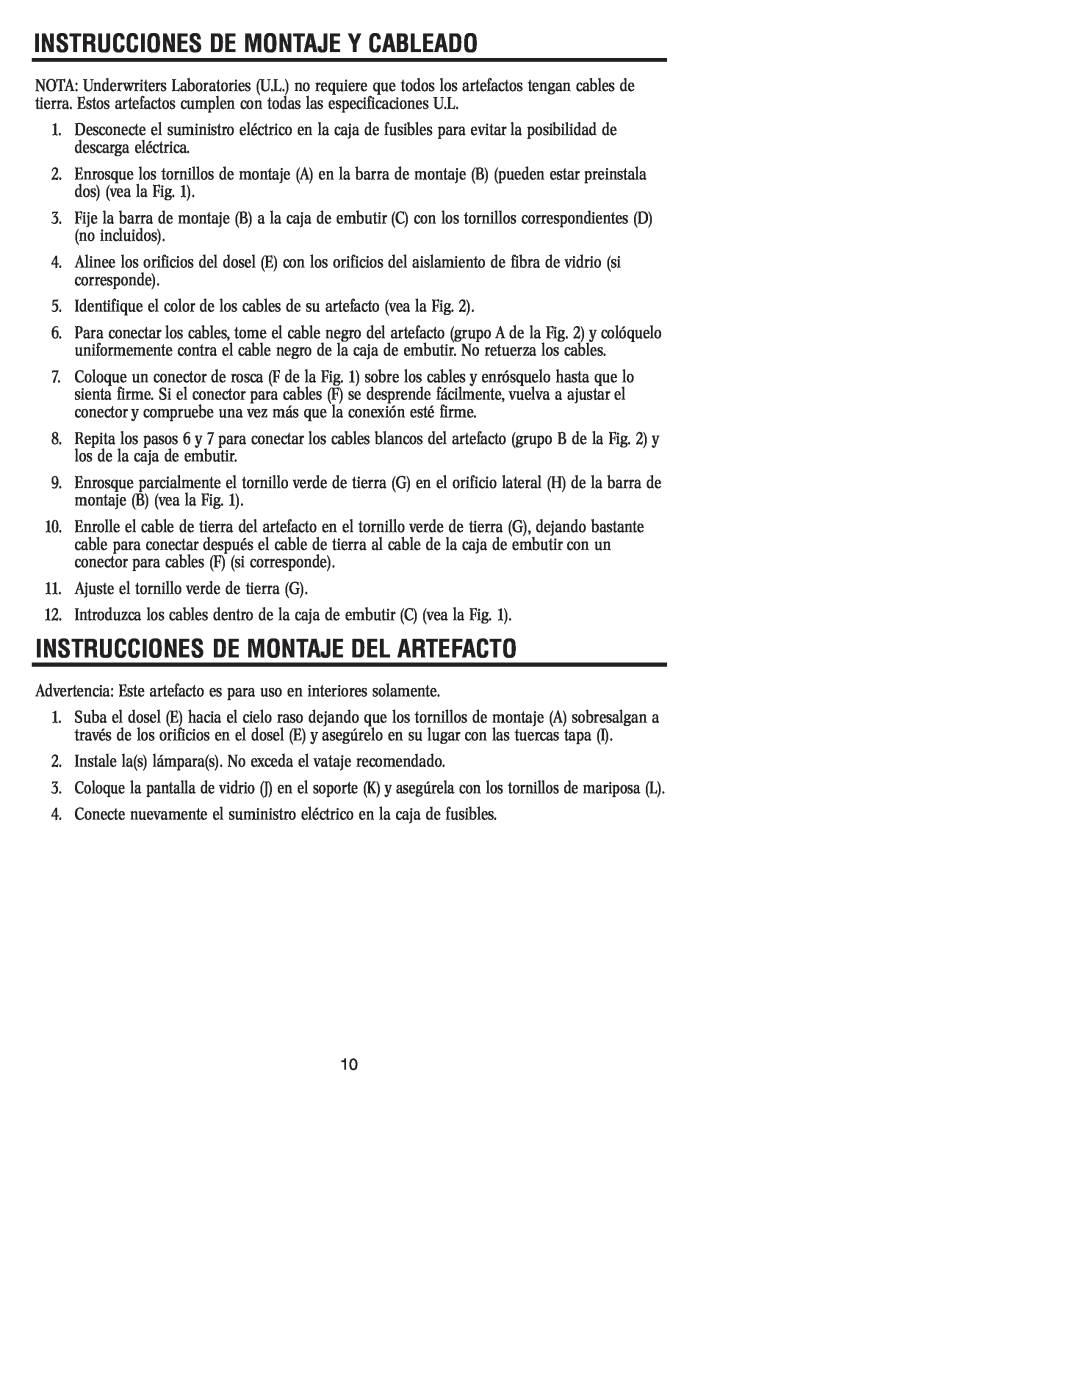 Westinghouse 81104 owner manual Instrucciones De Montaje Y Cableado, Instrucciones De Montaje Del Artefacto 